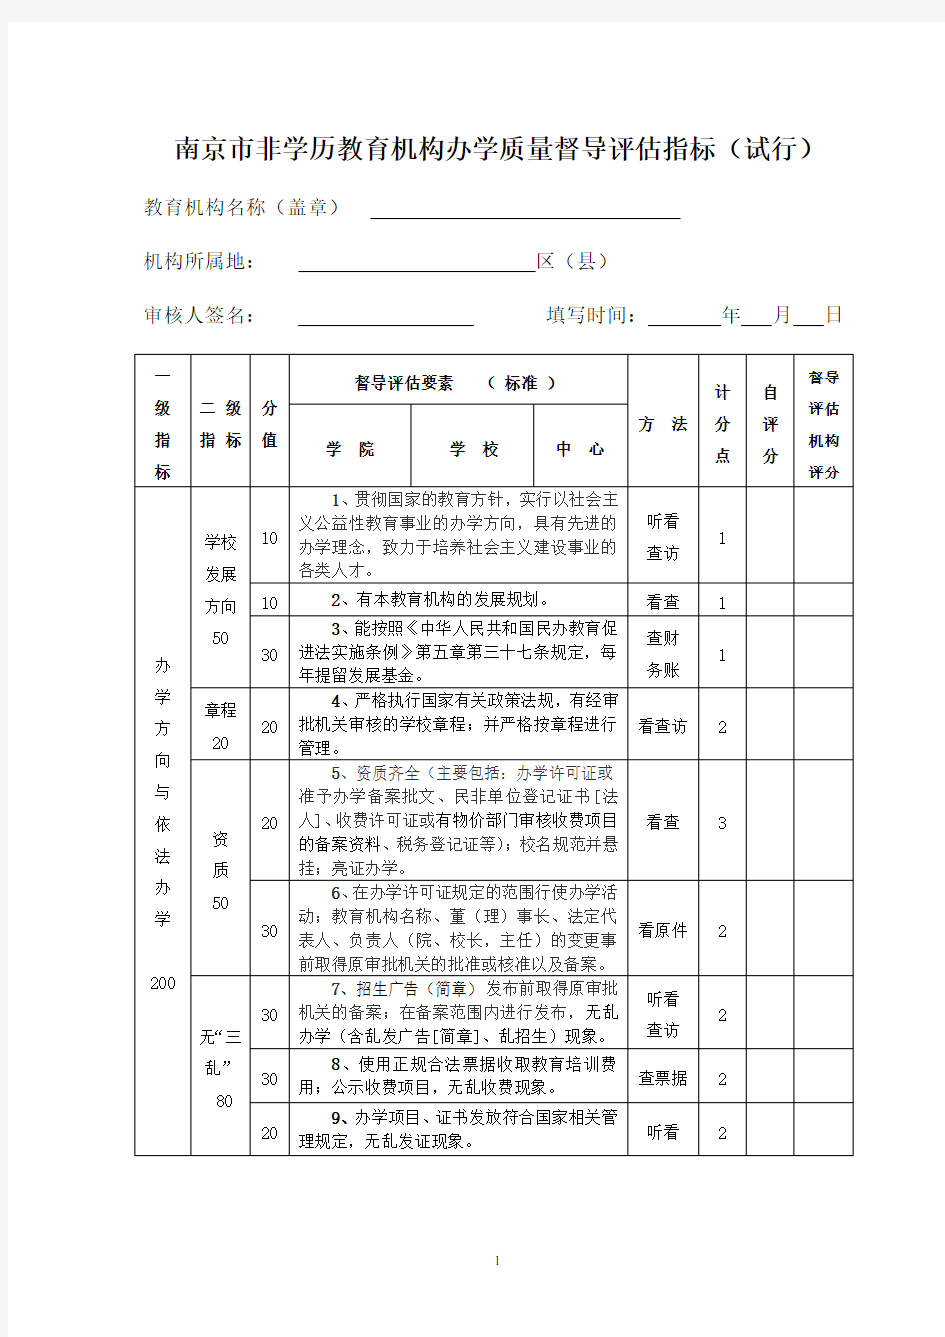 南京市非学历教育机构办学质量督导评估指标(试行)